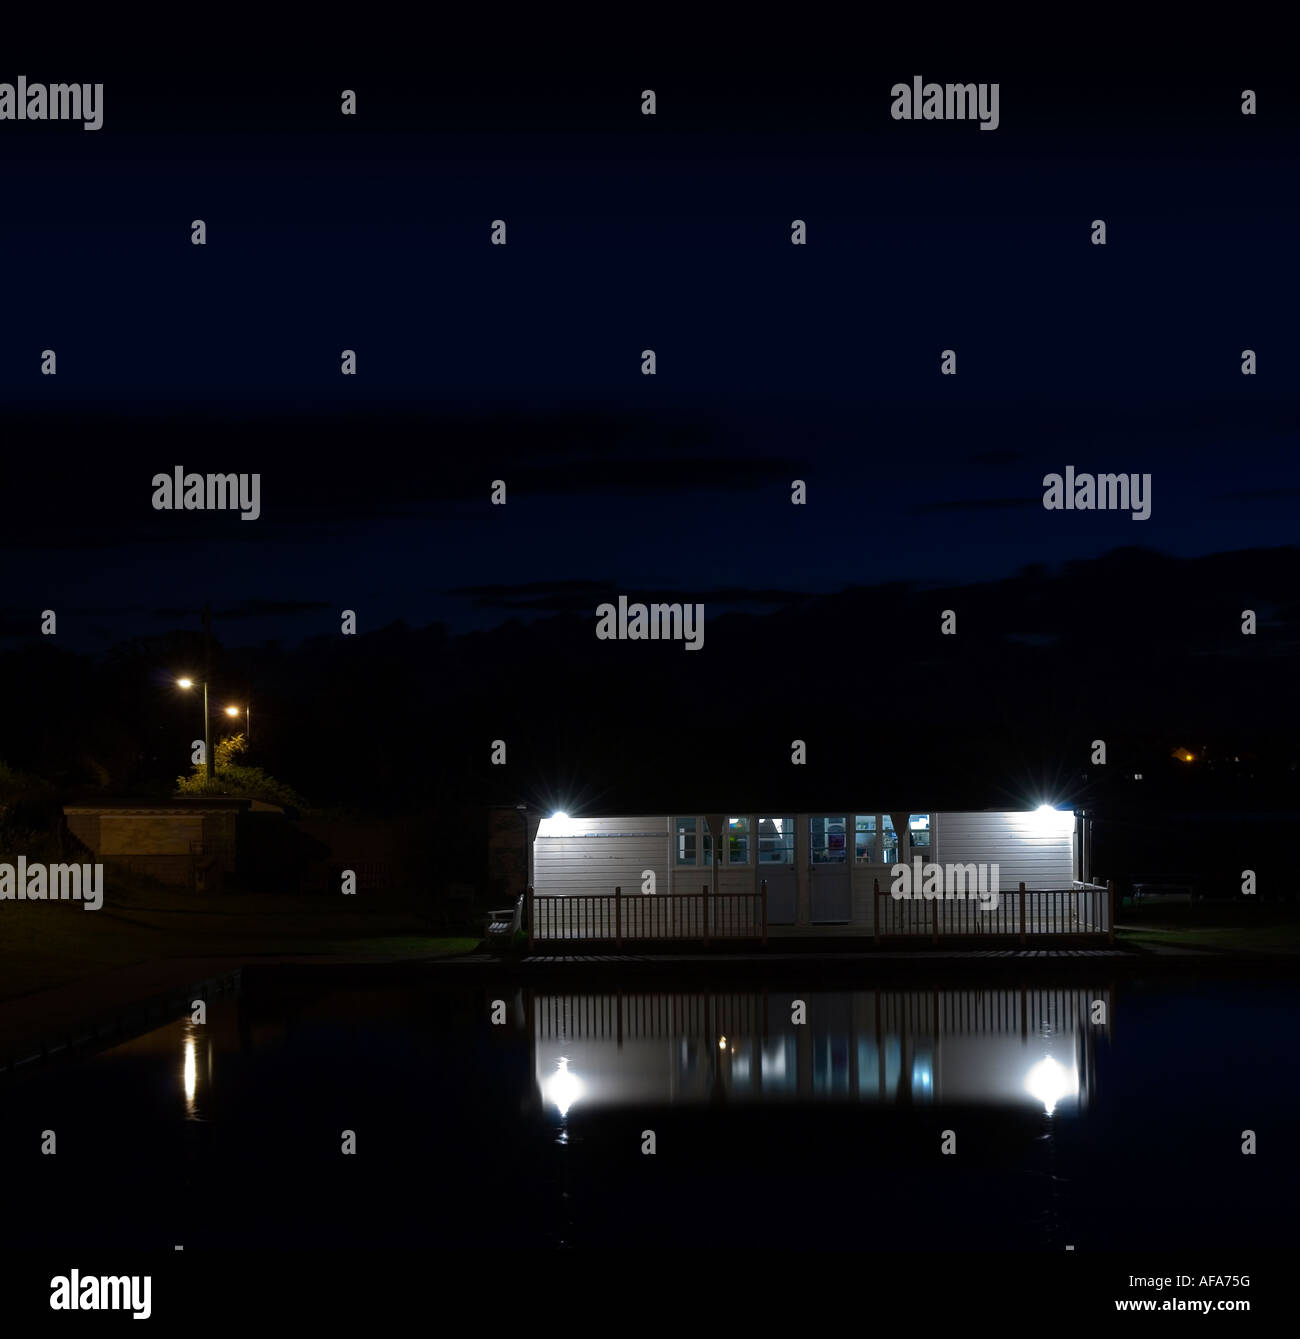 The boating lake at night Stock Photo